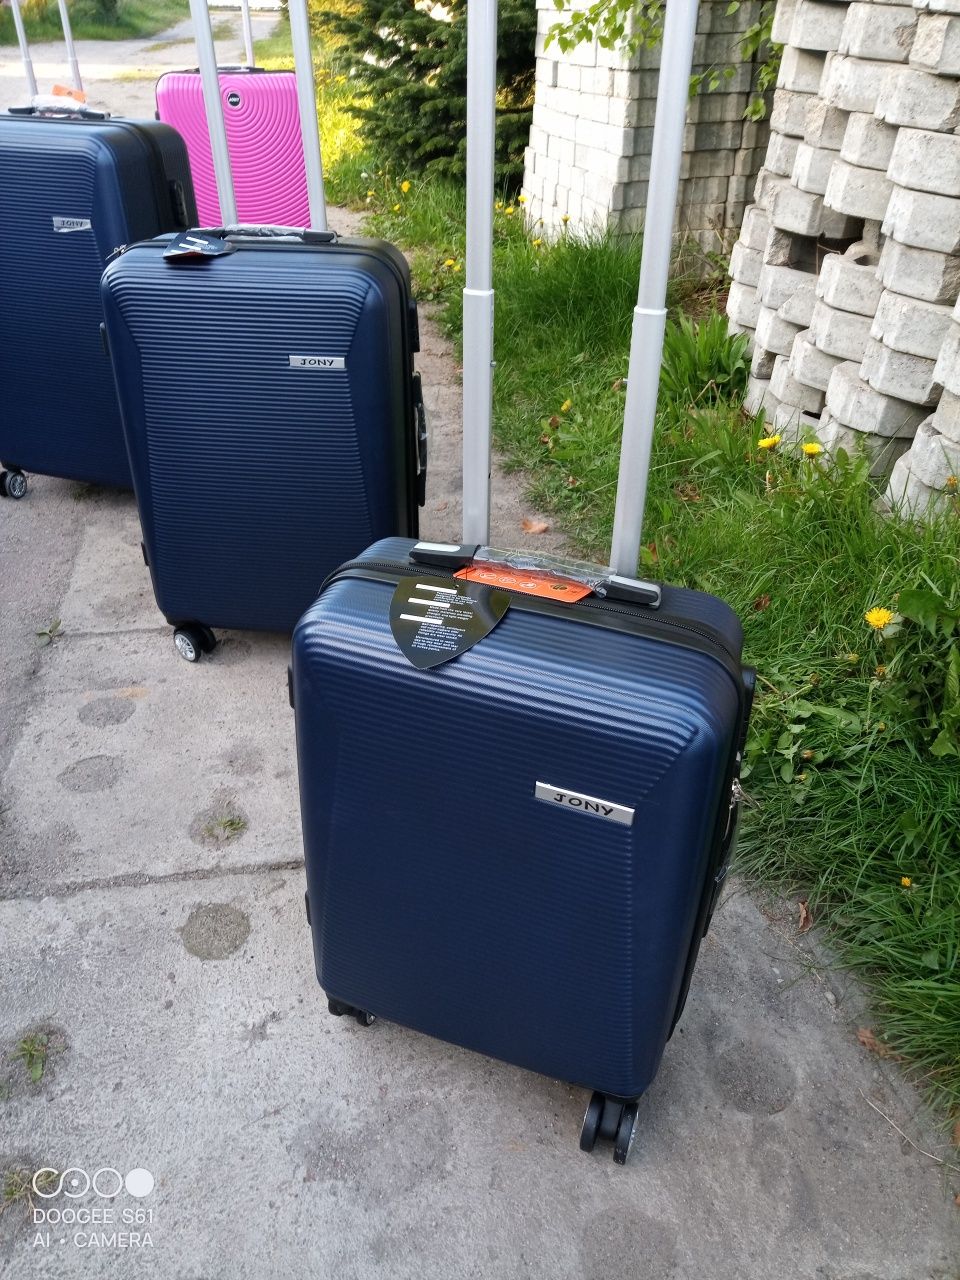 Nowa mała walizka ABS na czterech kółkach obracanych 360 stopni